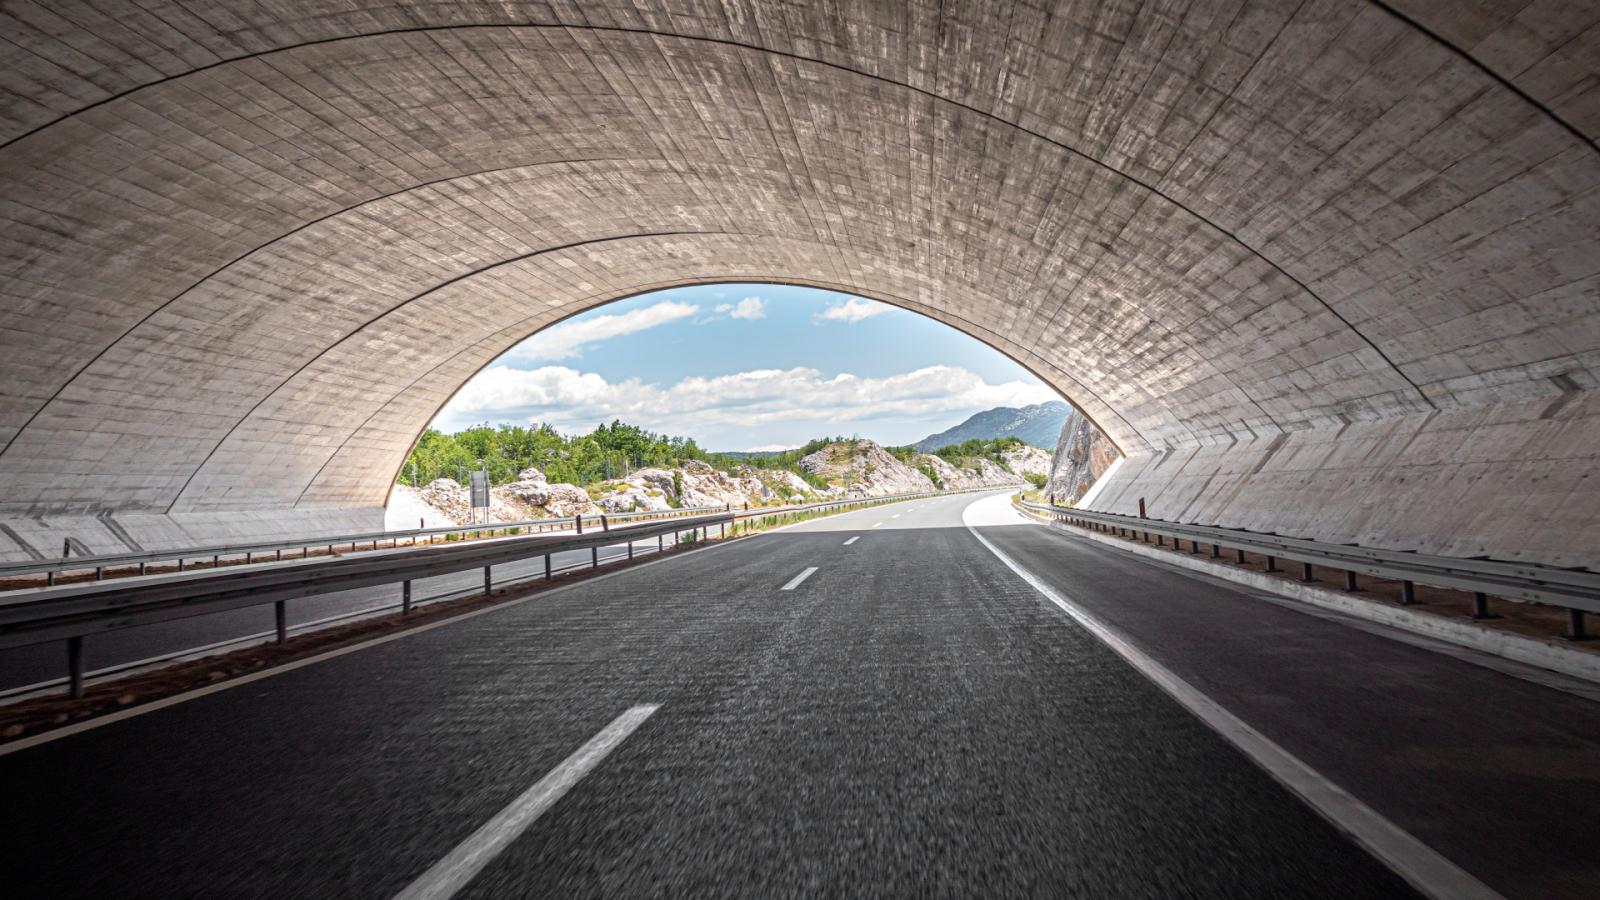 αυτό είναι το νέο μεγάλο τούνελ στη μακεδονία -πότε θα είναι έτοιμο, ποιες περιοχές θα ενώσει